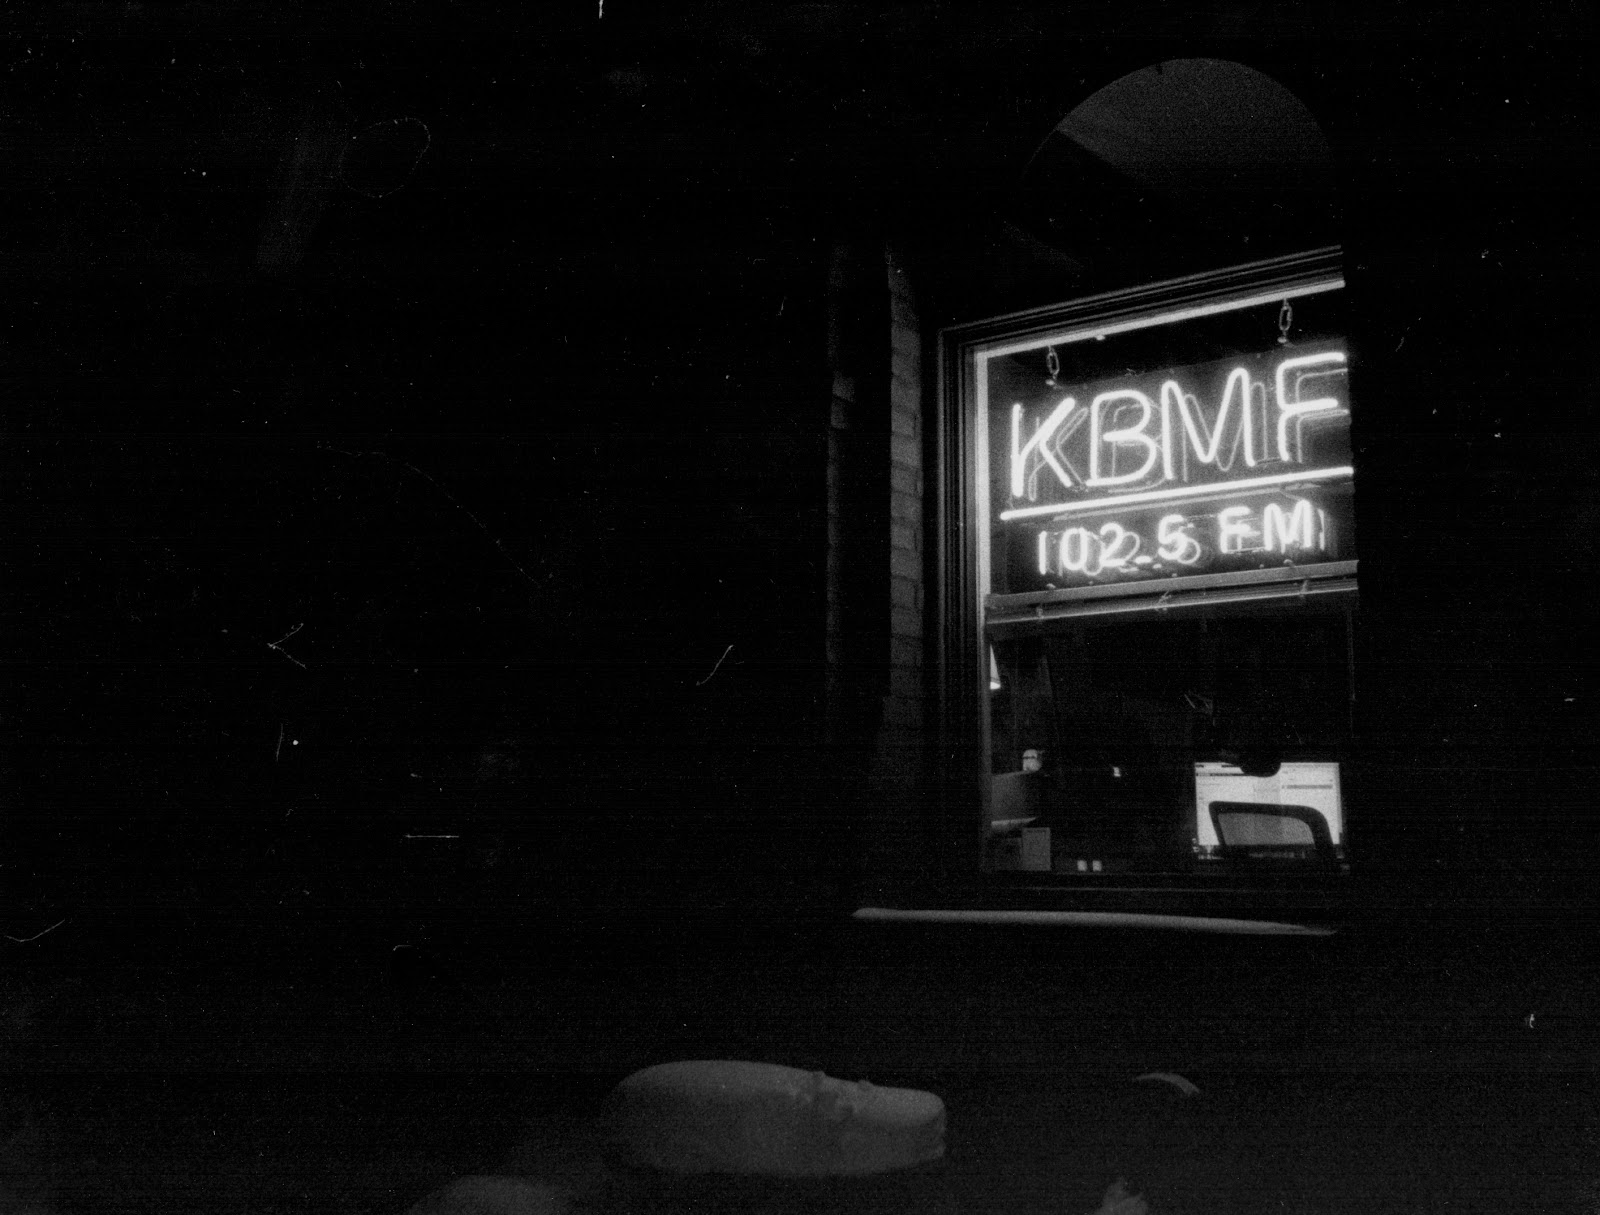 Neon sign at KBMF-LP 102.5 FM